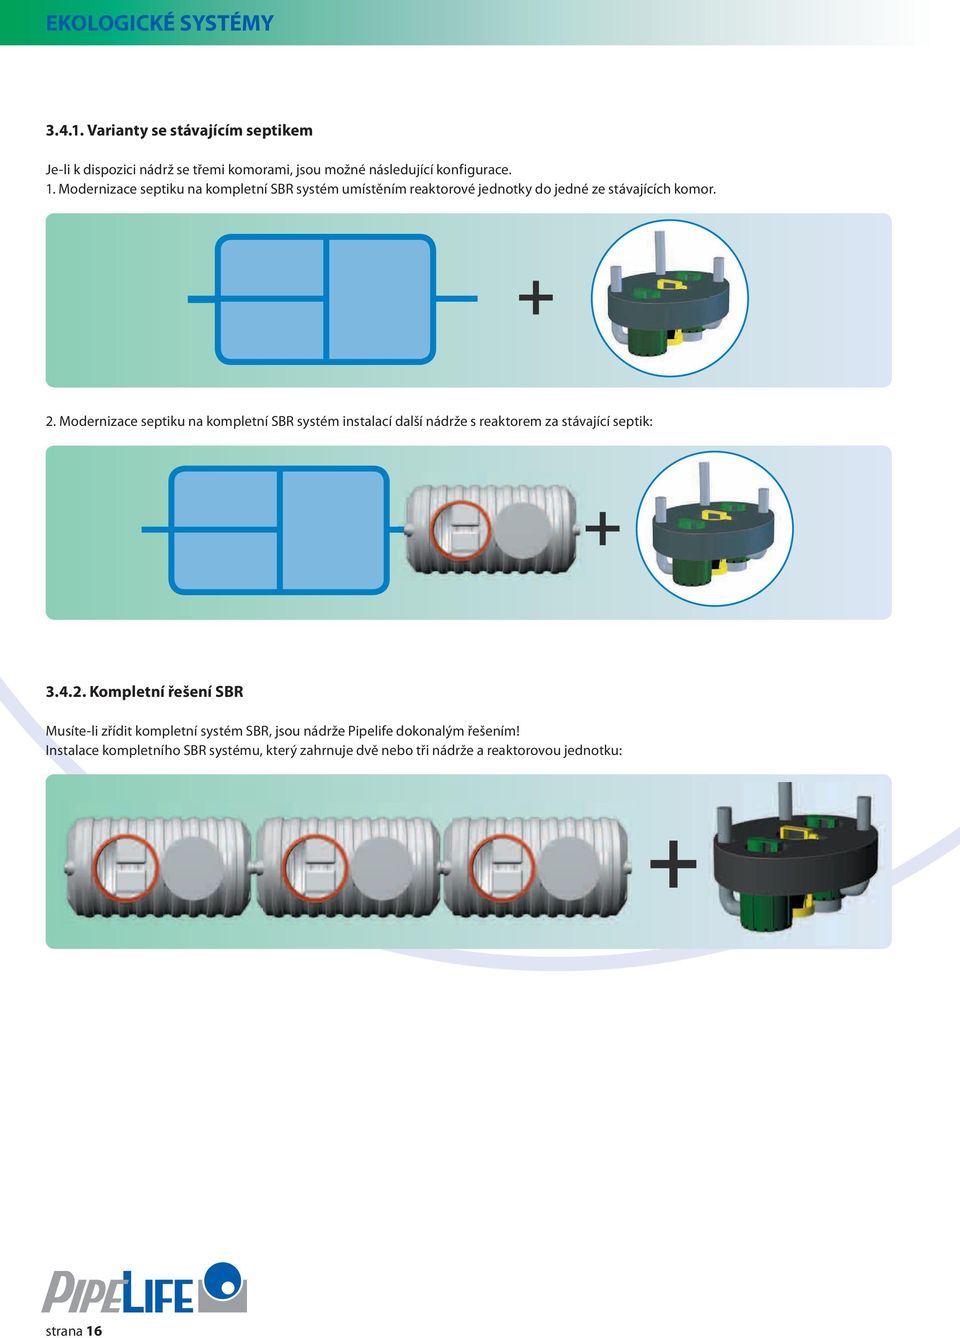 Modernizace septiku na kompletní SBR systém instalací další nádrže s reaktorem za stávající septik: 3.4.2.